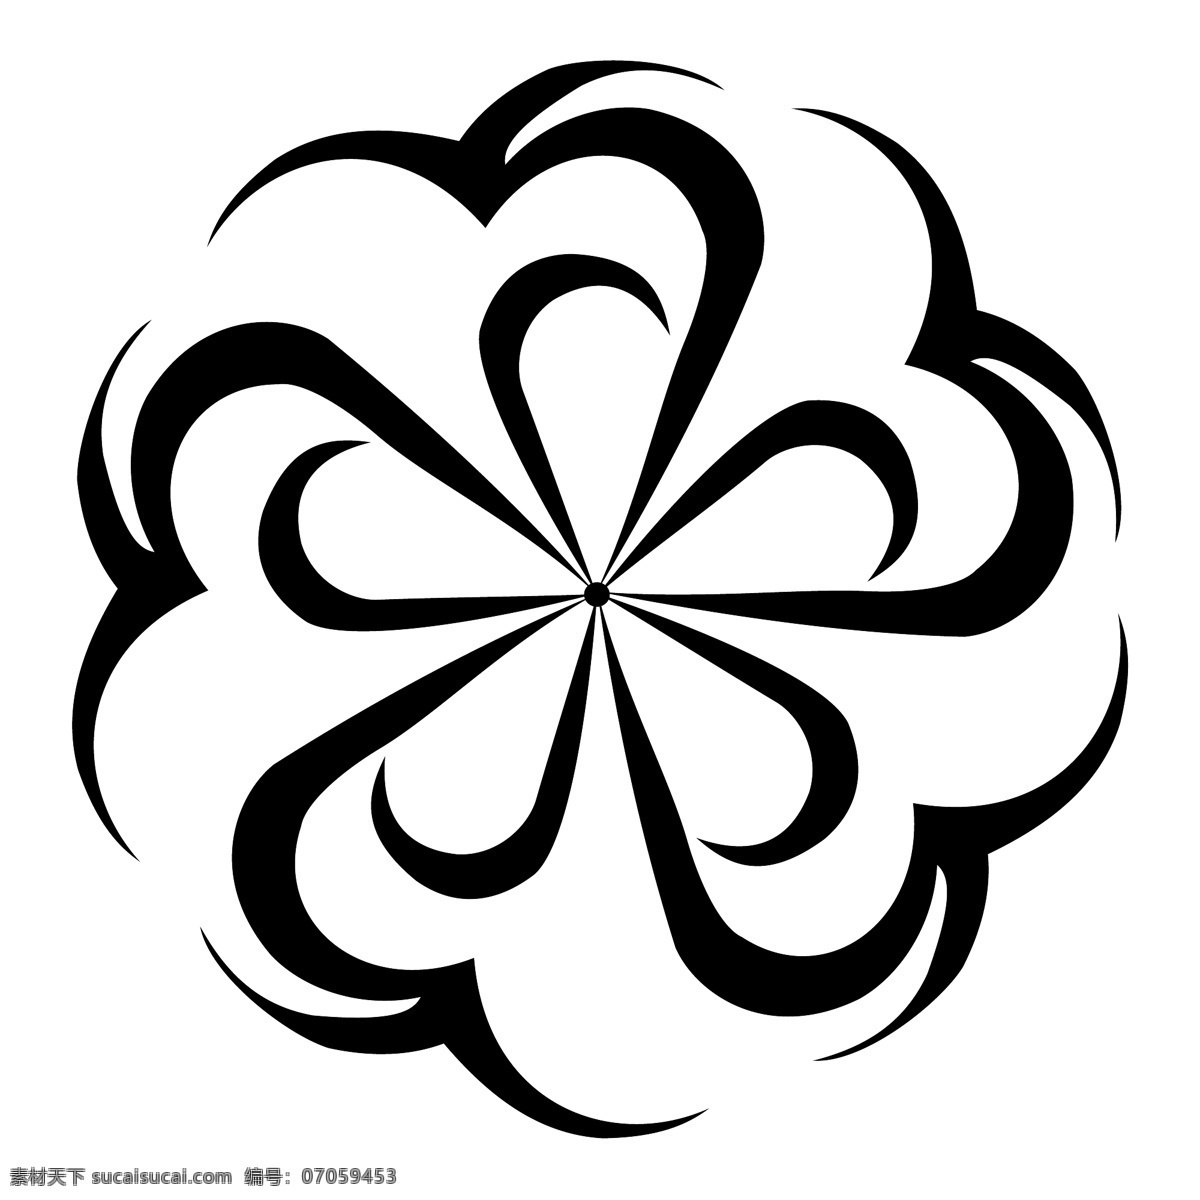 教育标识 行业标志 logo 标志 2025 logo标志 设计素材 标识设计 平面设计 白色